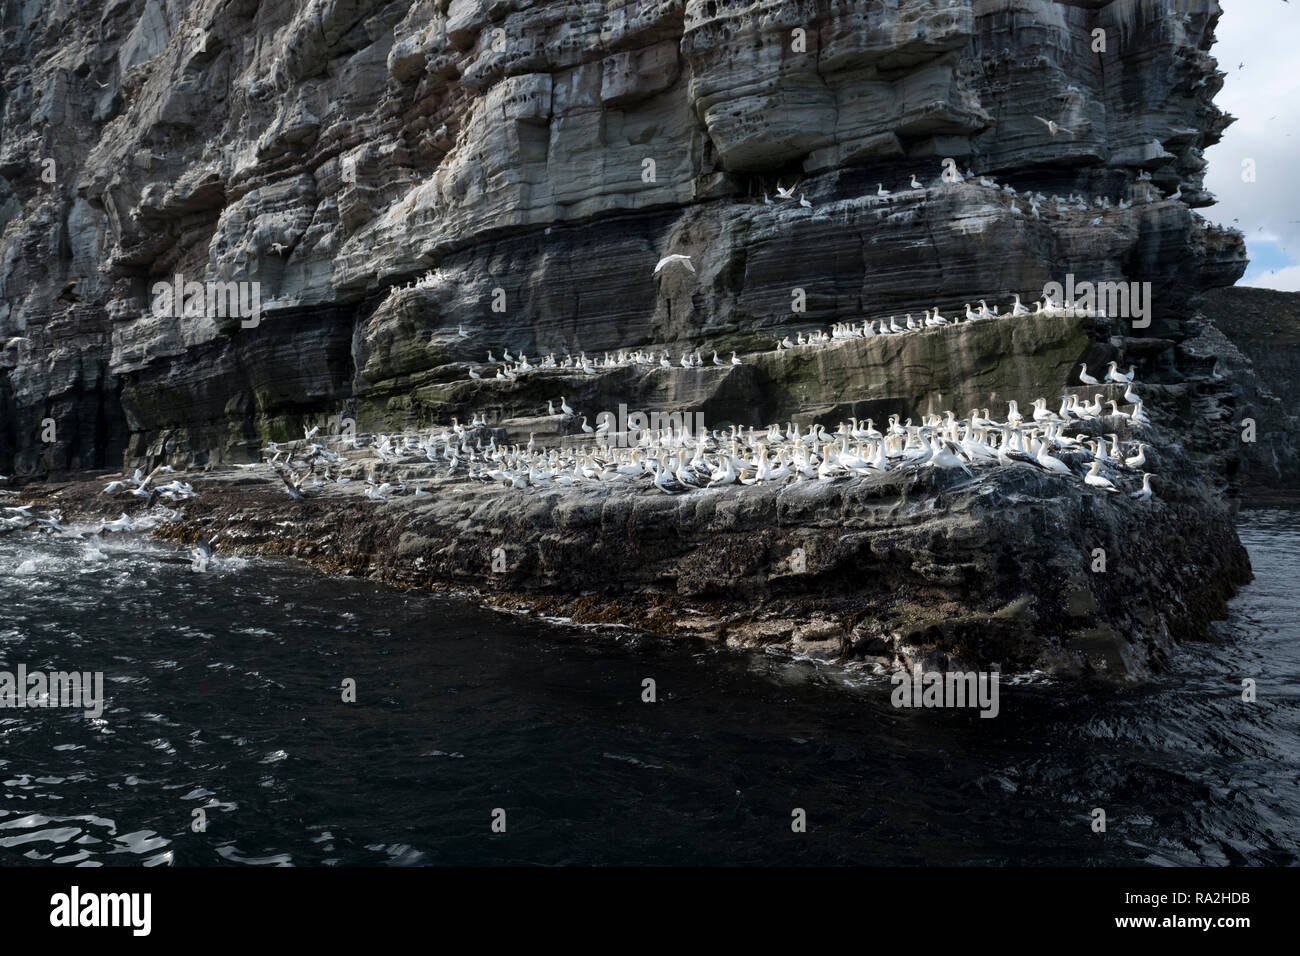 Rock formations sur l'île de Noss dans les îles Shetland de l'Ecosse par un beau jour ensoleillé rempli de milliers d'oiseaux nicheurs Banque D'Images